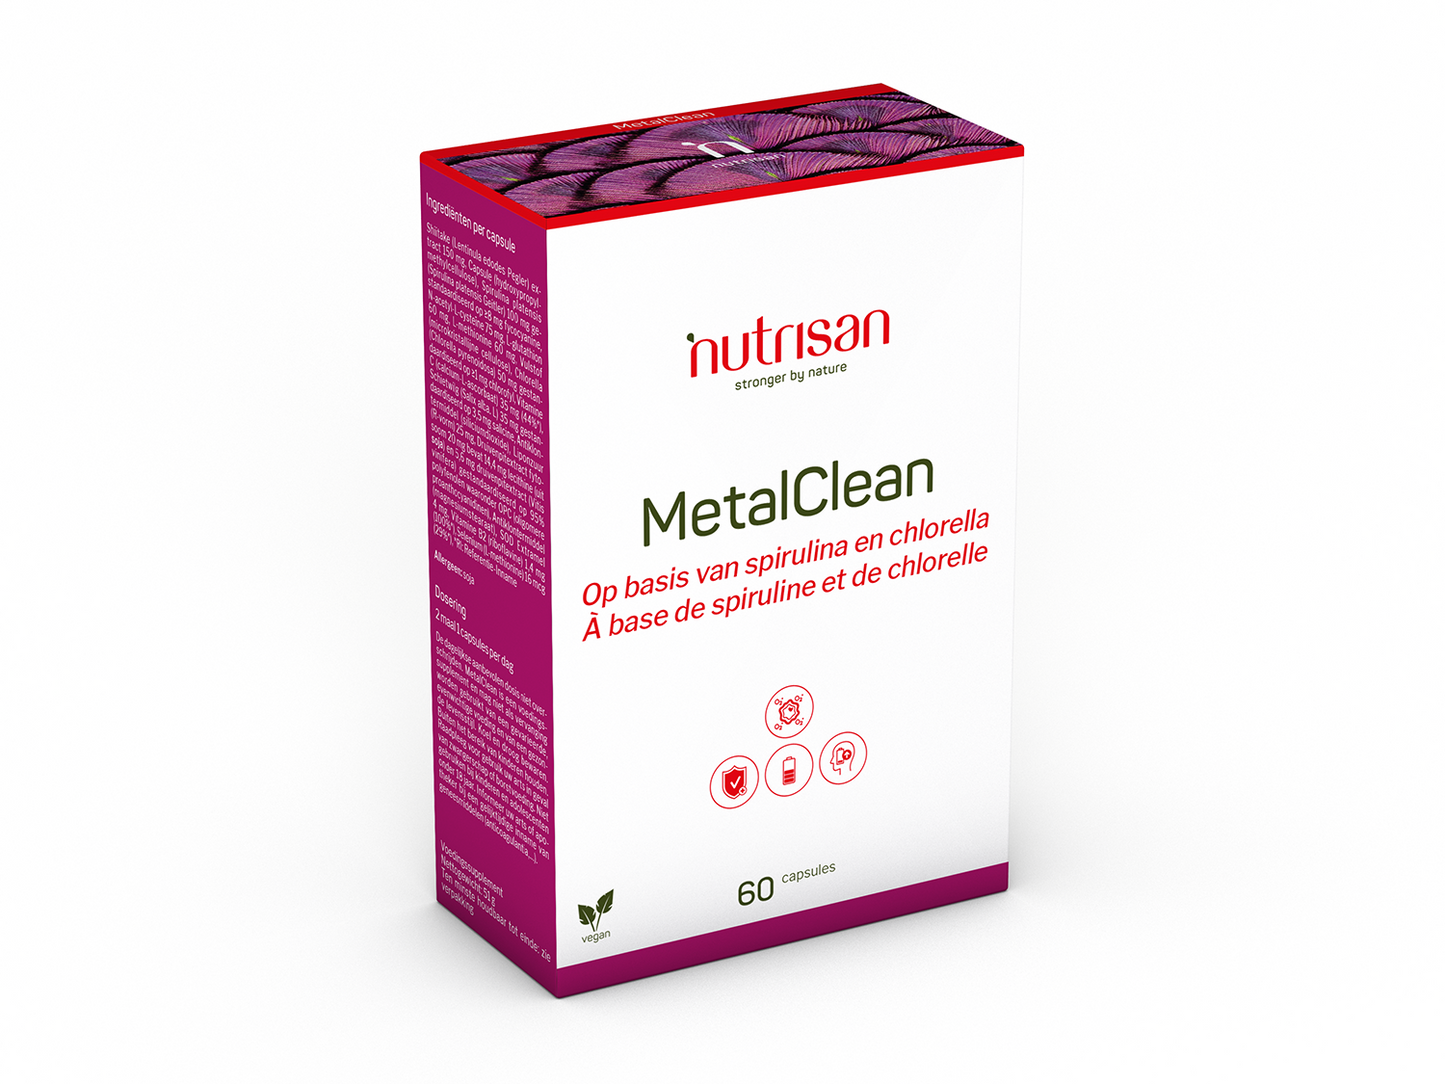 Nutrisan MetalClean - Supplement bij stress en vermoeidheid